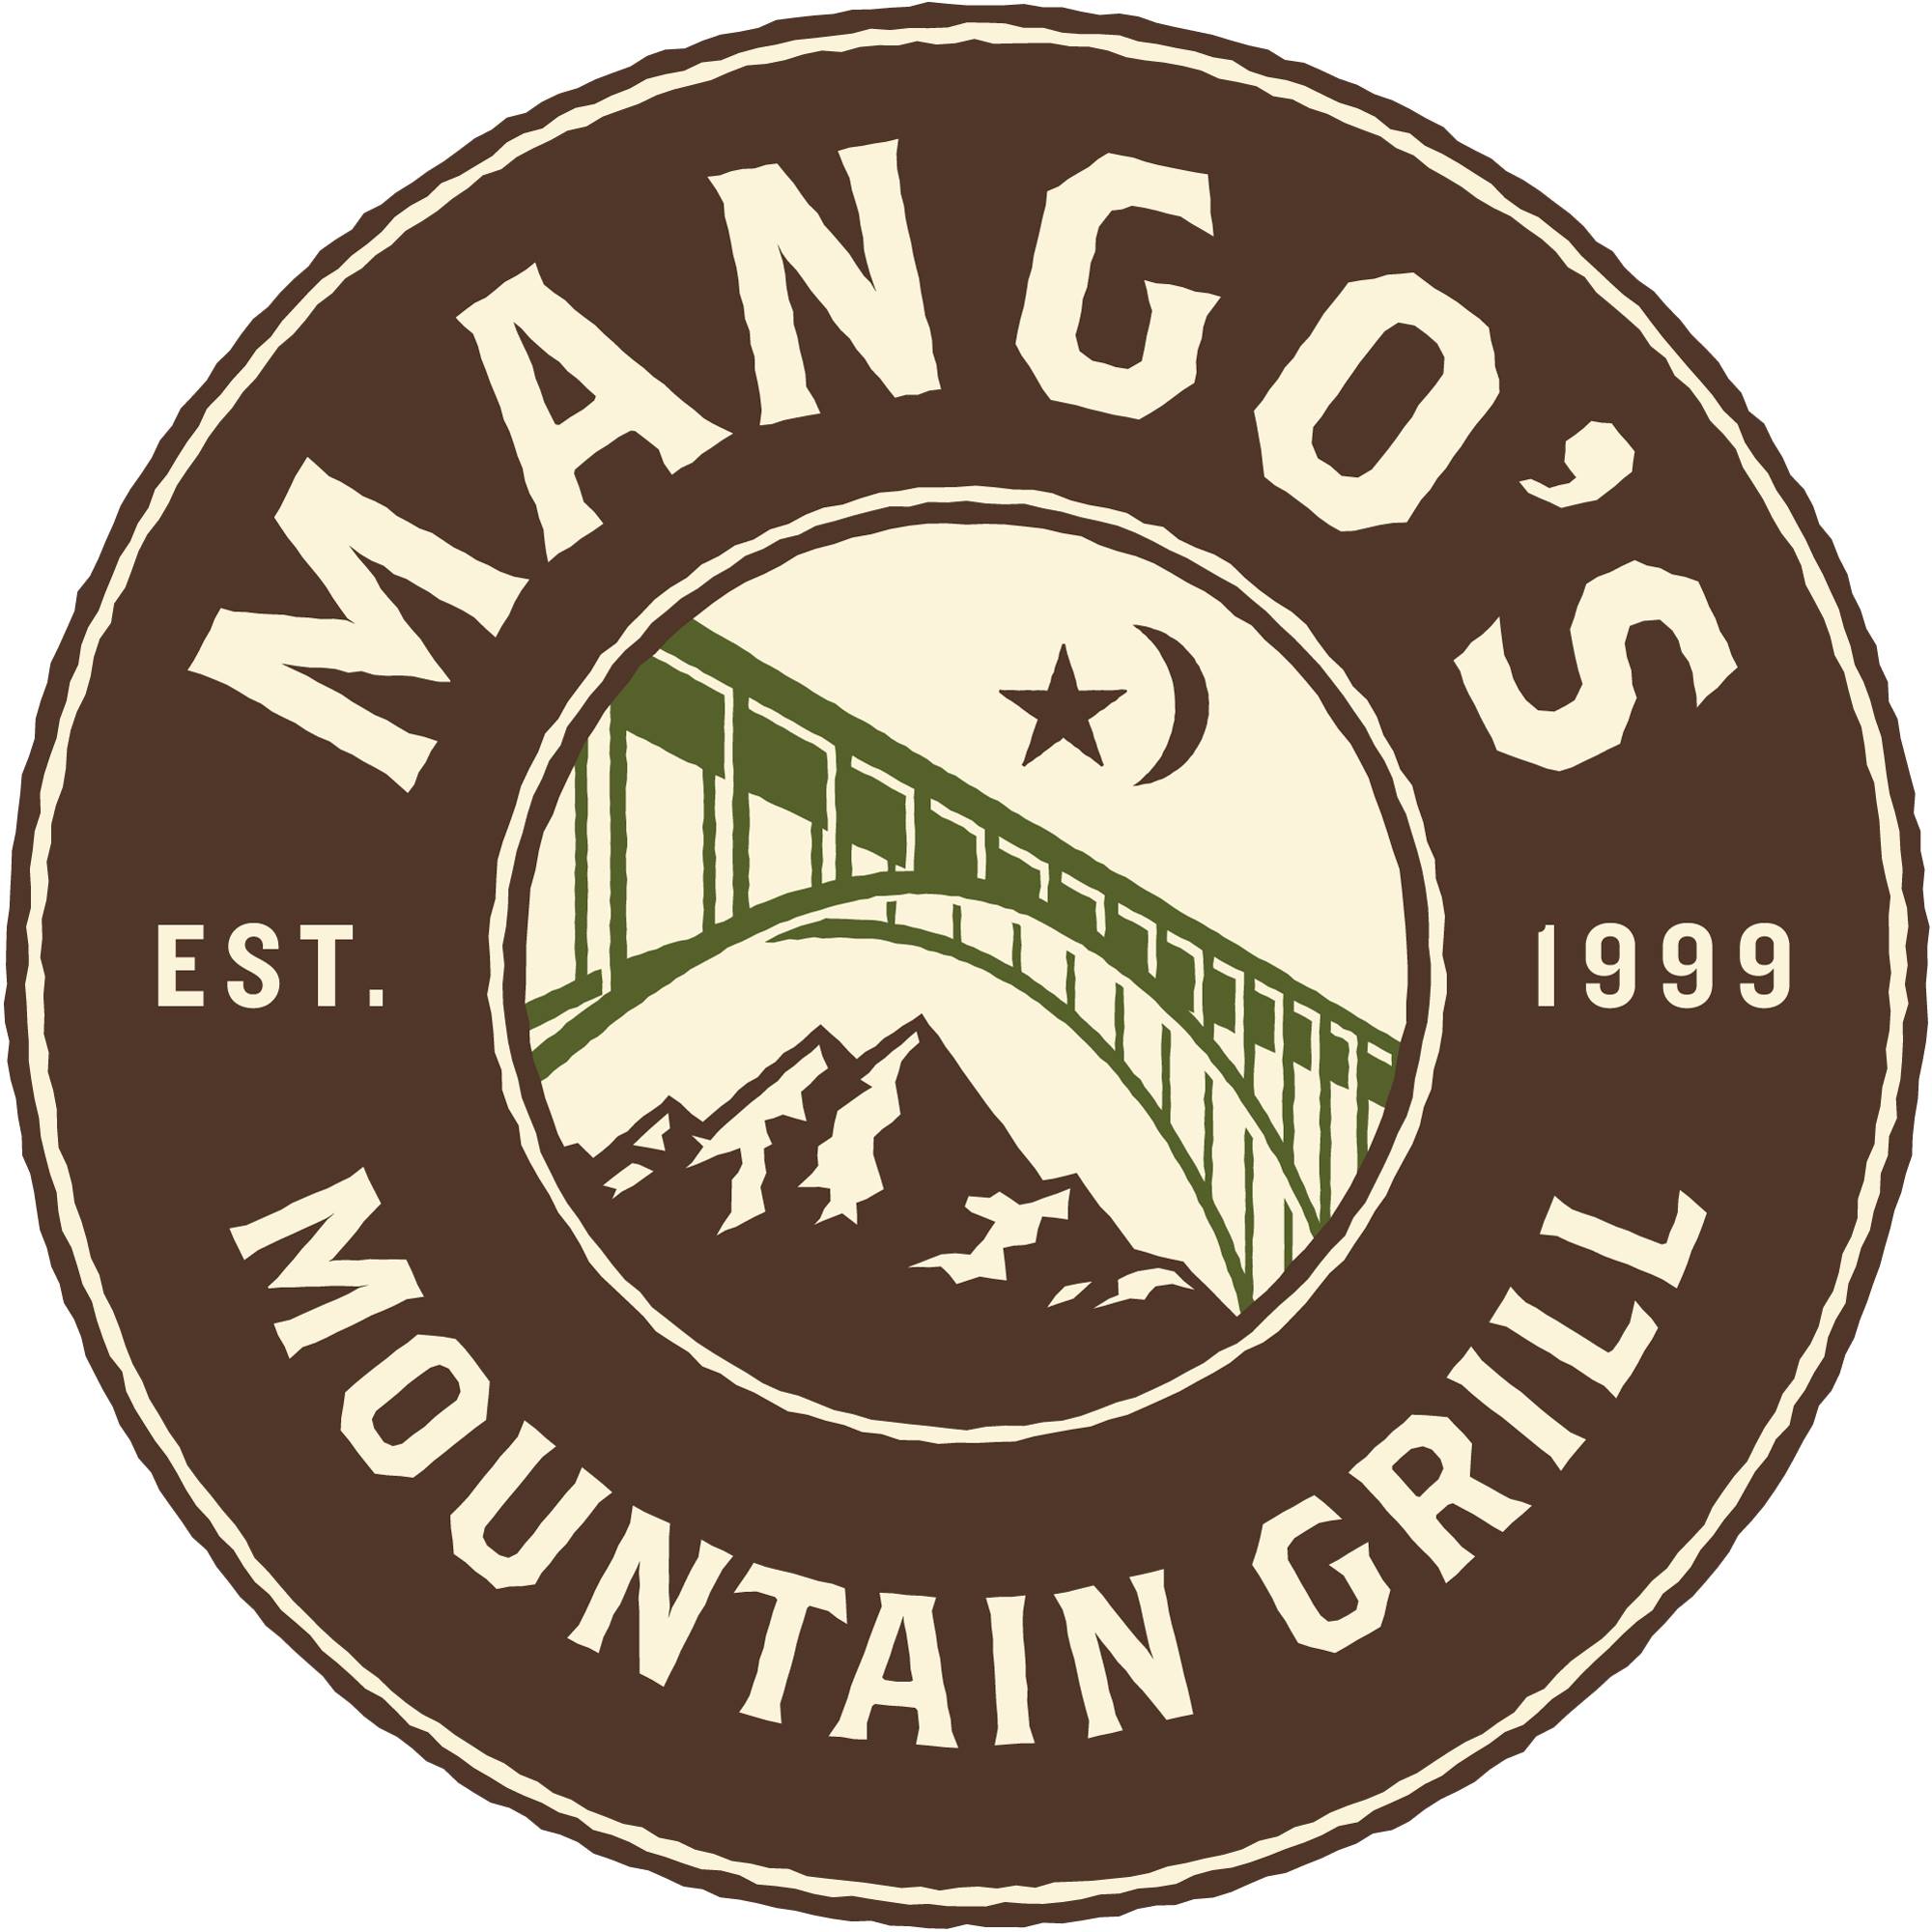 Mango's mountain grill logo